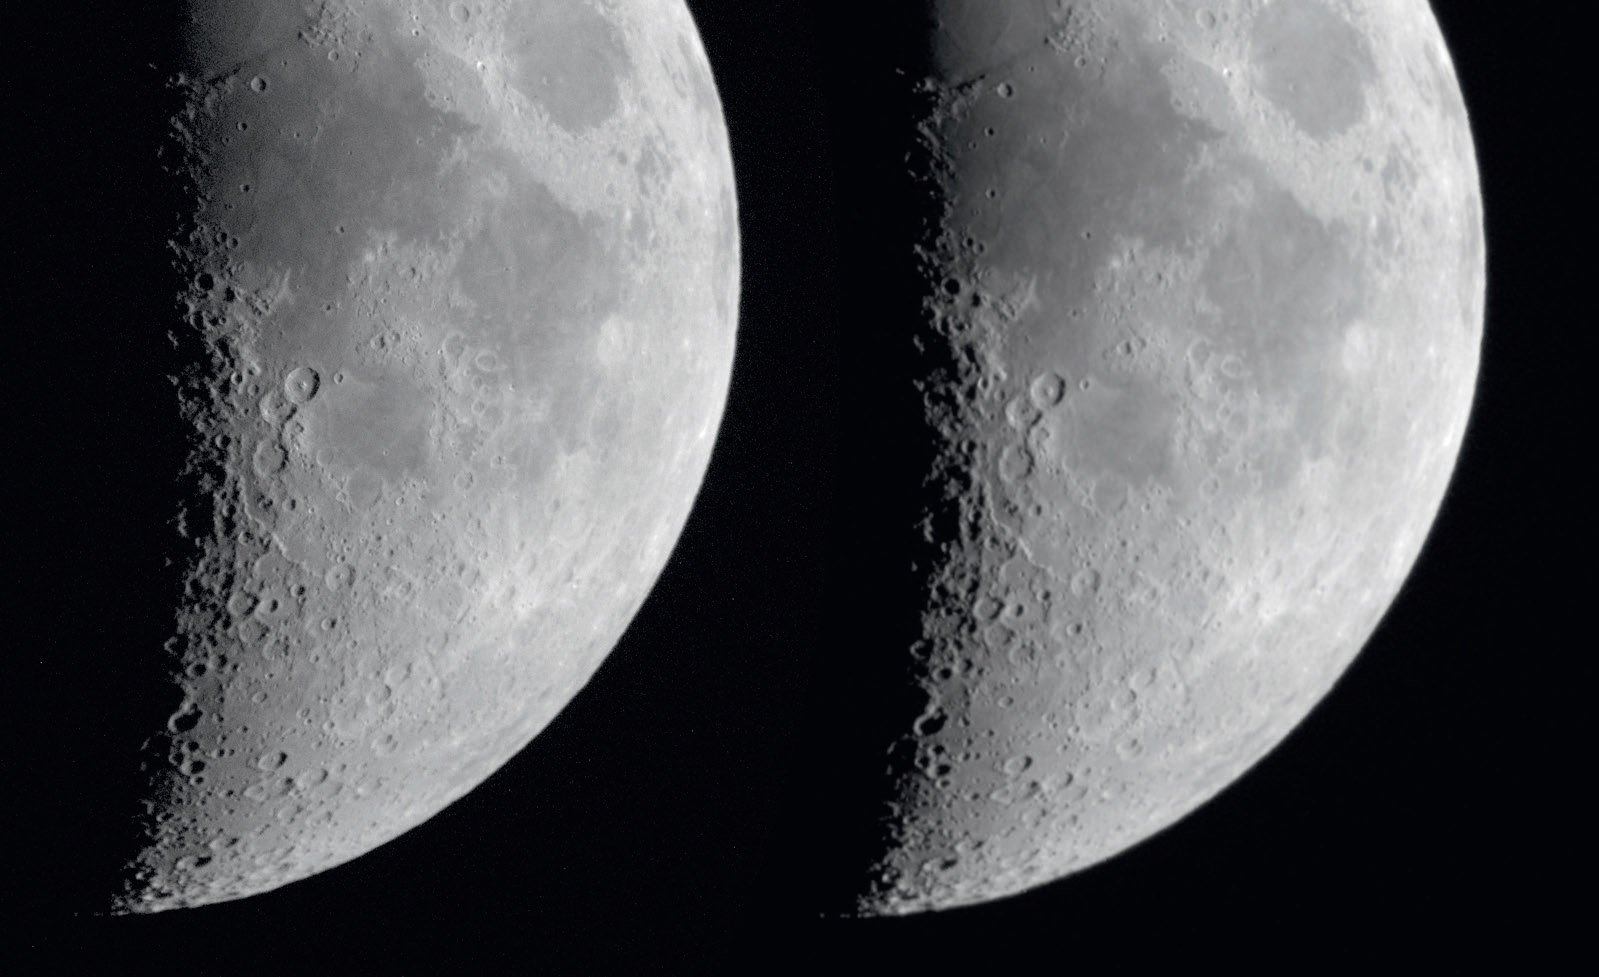 Efekt działania reduktora można bardzo dobrze zobrazować na przykładzie bardzo krótkich ekspozycji Księżyca. Po lewej zdjęcie Księżyca przy f/12,4 a po prawej z reduktorem przy f/6,7 z tym samym czasem ekspozycji i aperturą. Zdjęcie wykonane z reduktorem zostało powiększone aby wyrównać skalę obrazu. M. Weigand